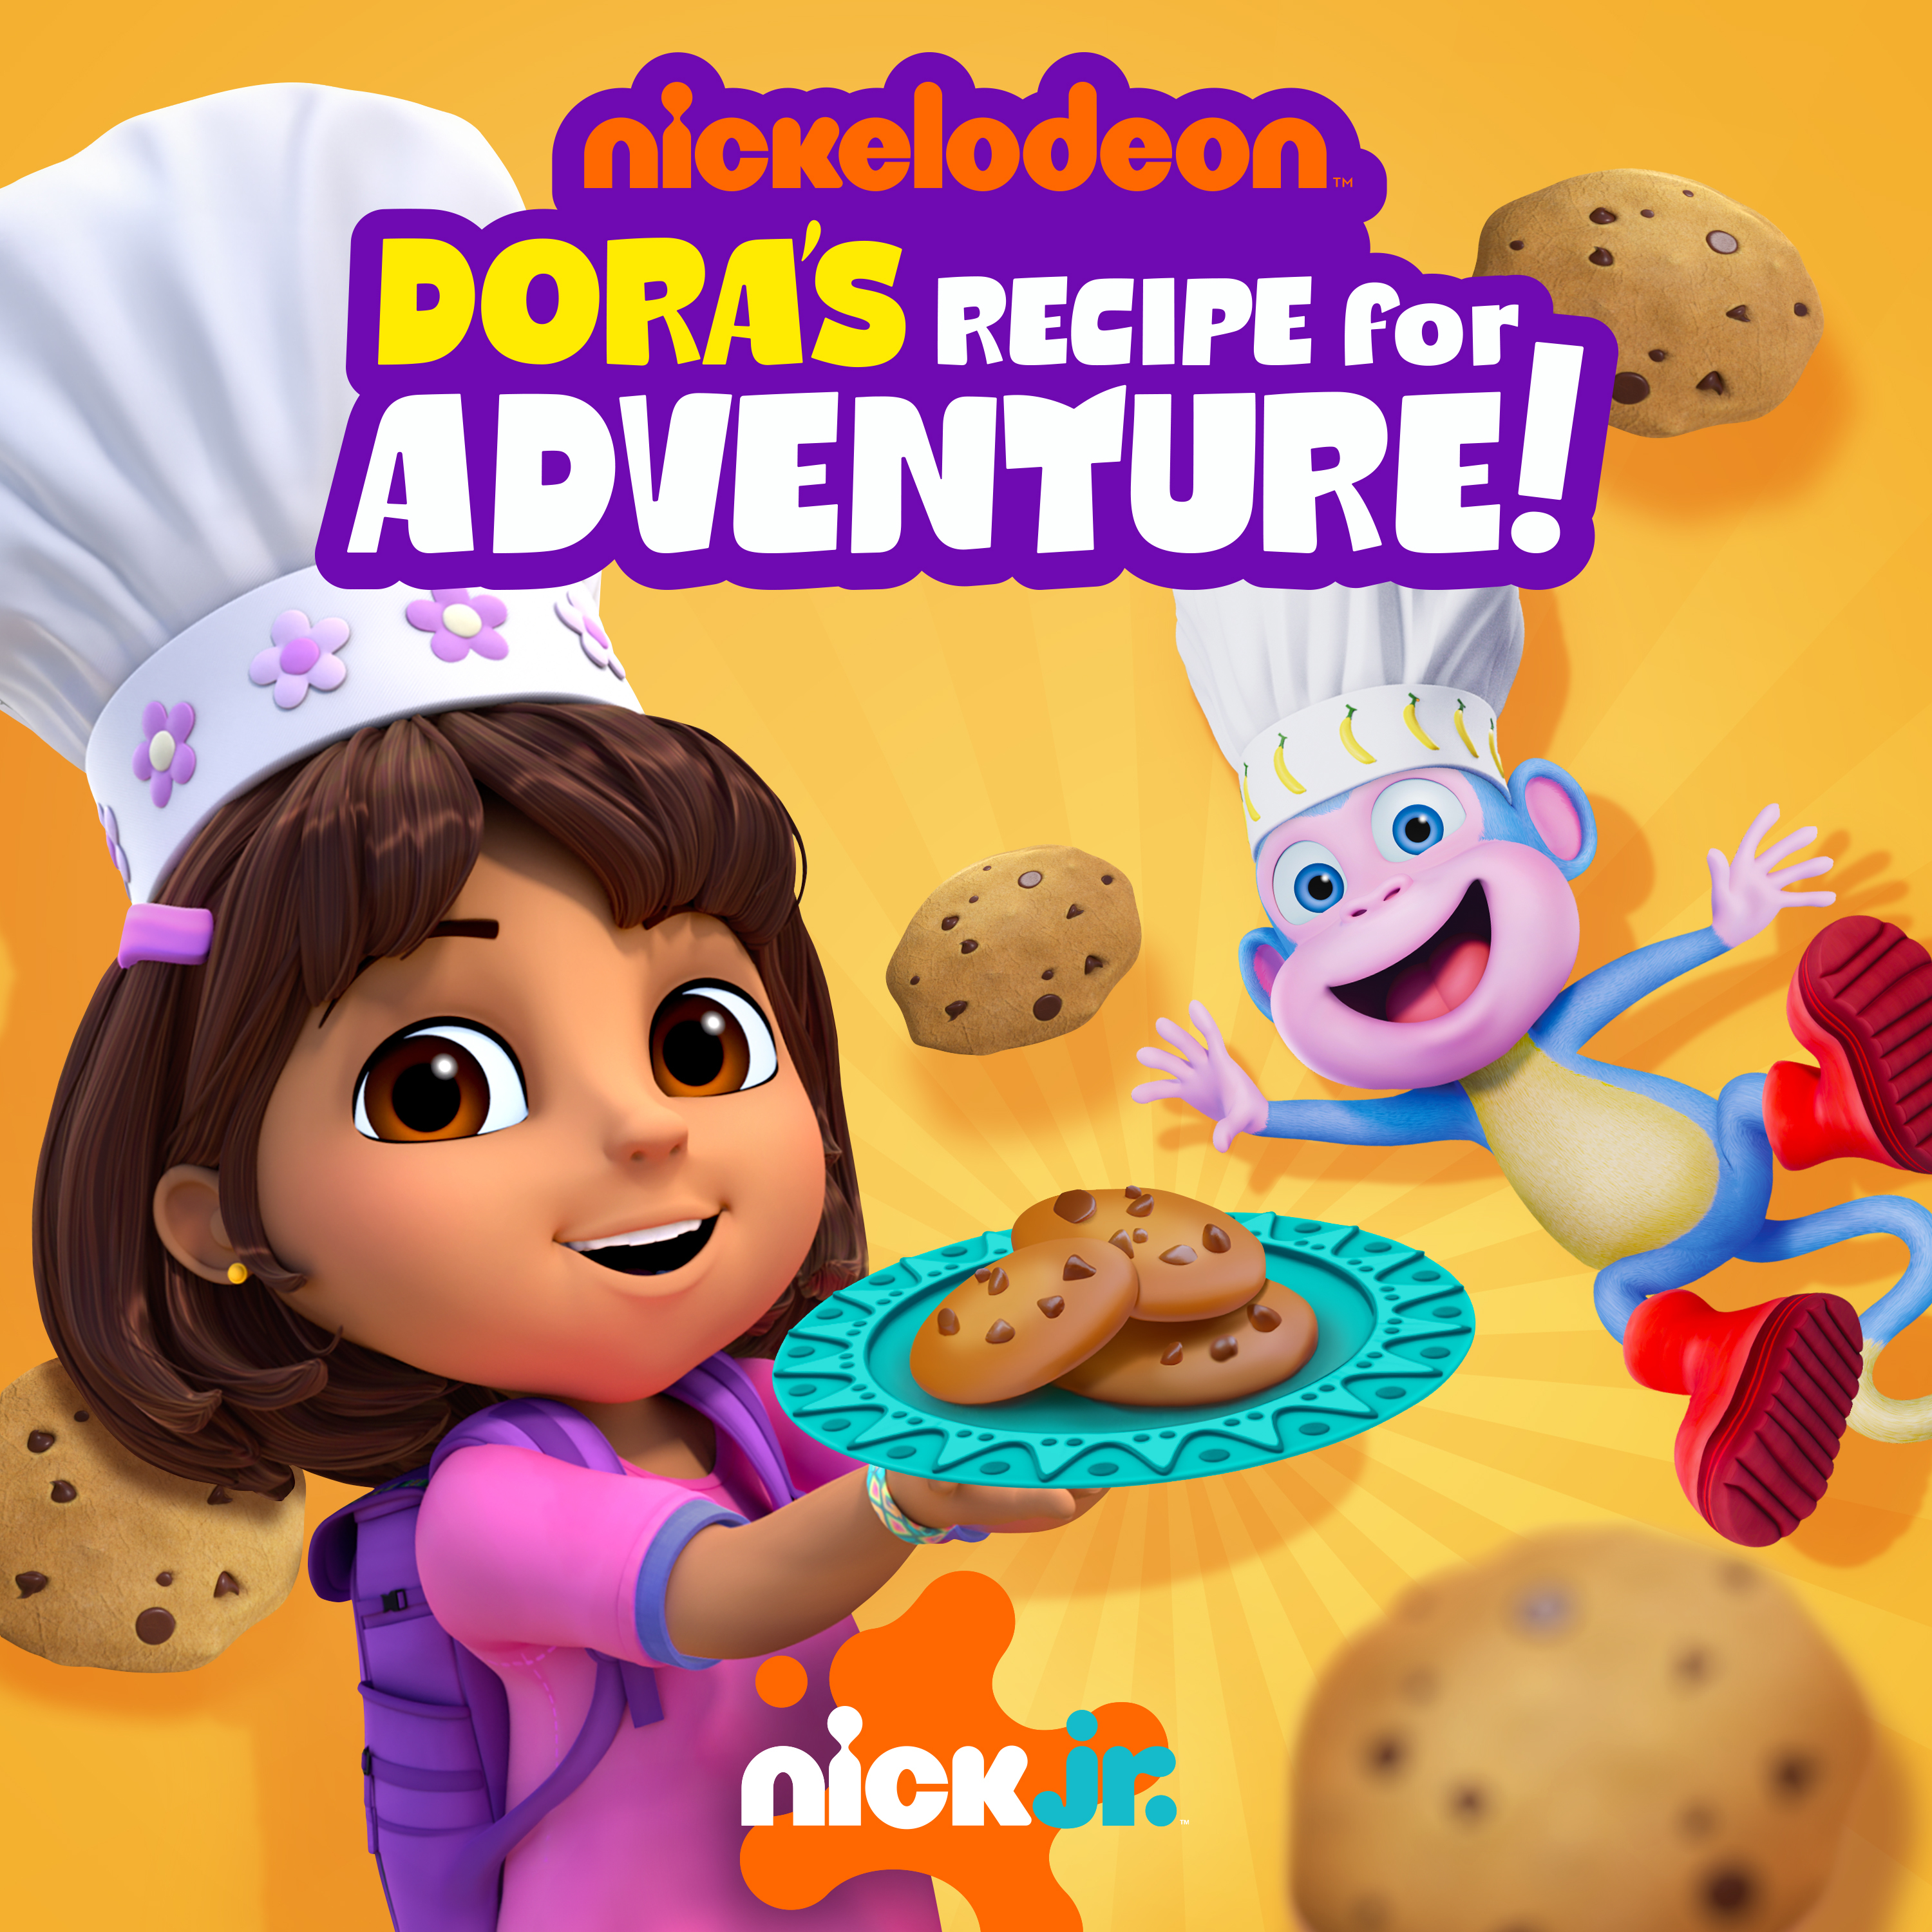 Doras Recipe for Adventure